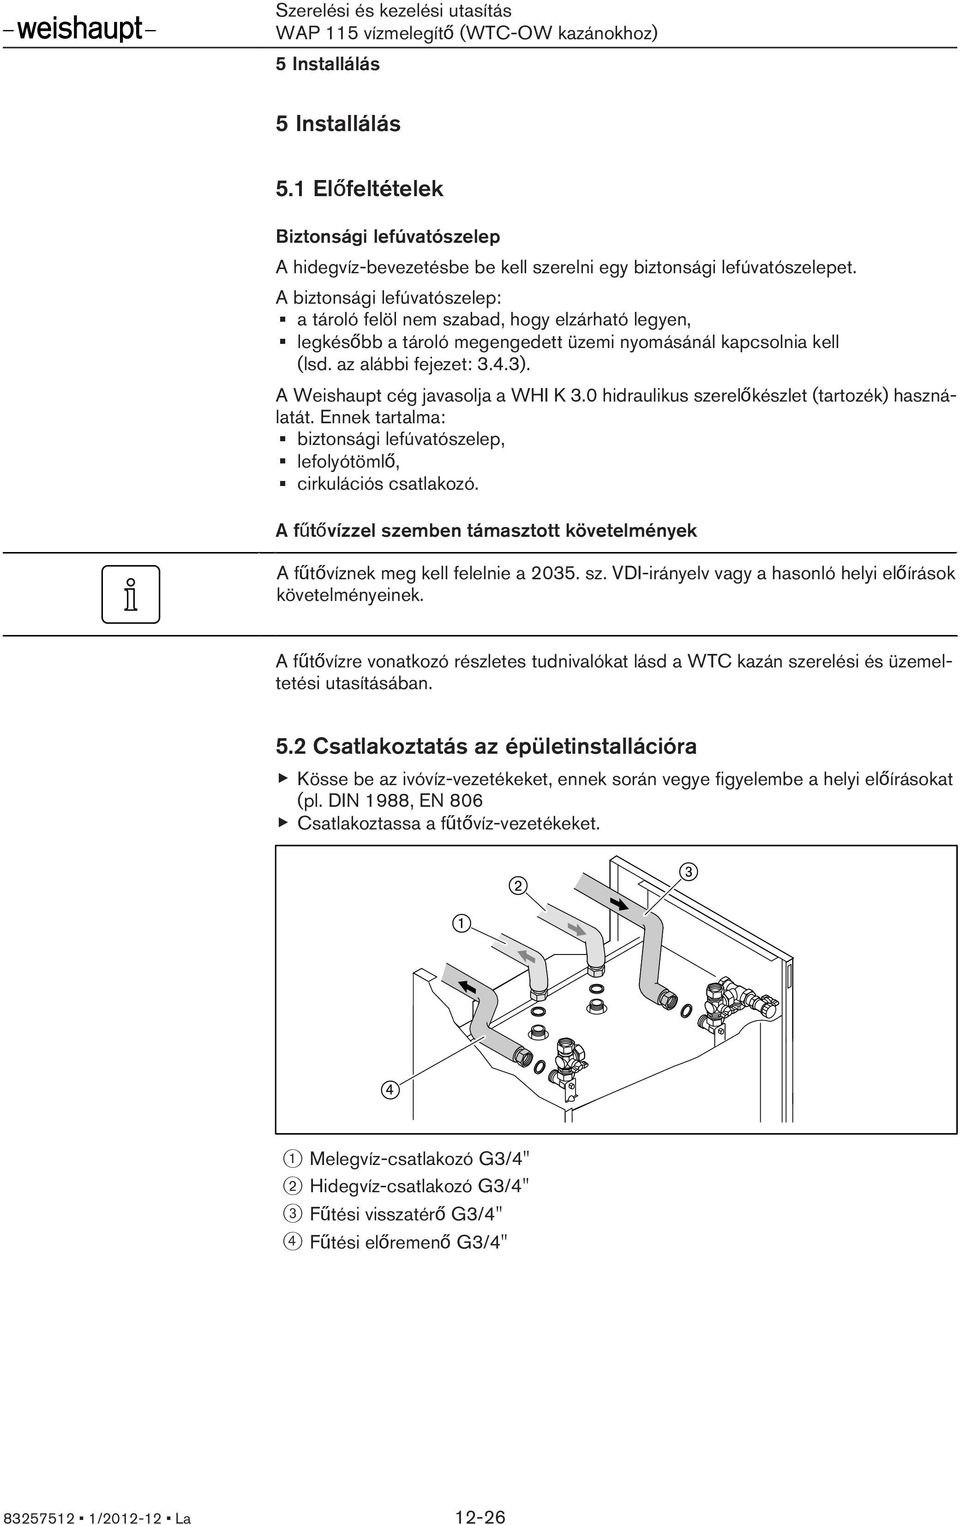 A Weishaupt cég javasolja a WHI K 3.0 hidraulikus szerelőkészlet (tartozék) használatát. Ennek tartalma: biztonsági lefúvatószelep, lefolyótömlő, cirkulációs csatlakozó.